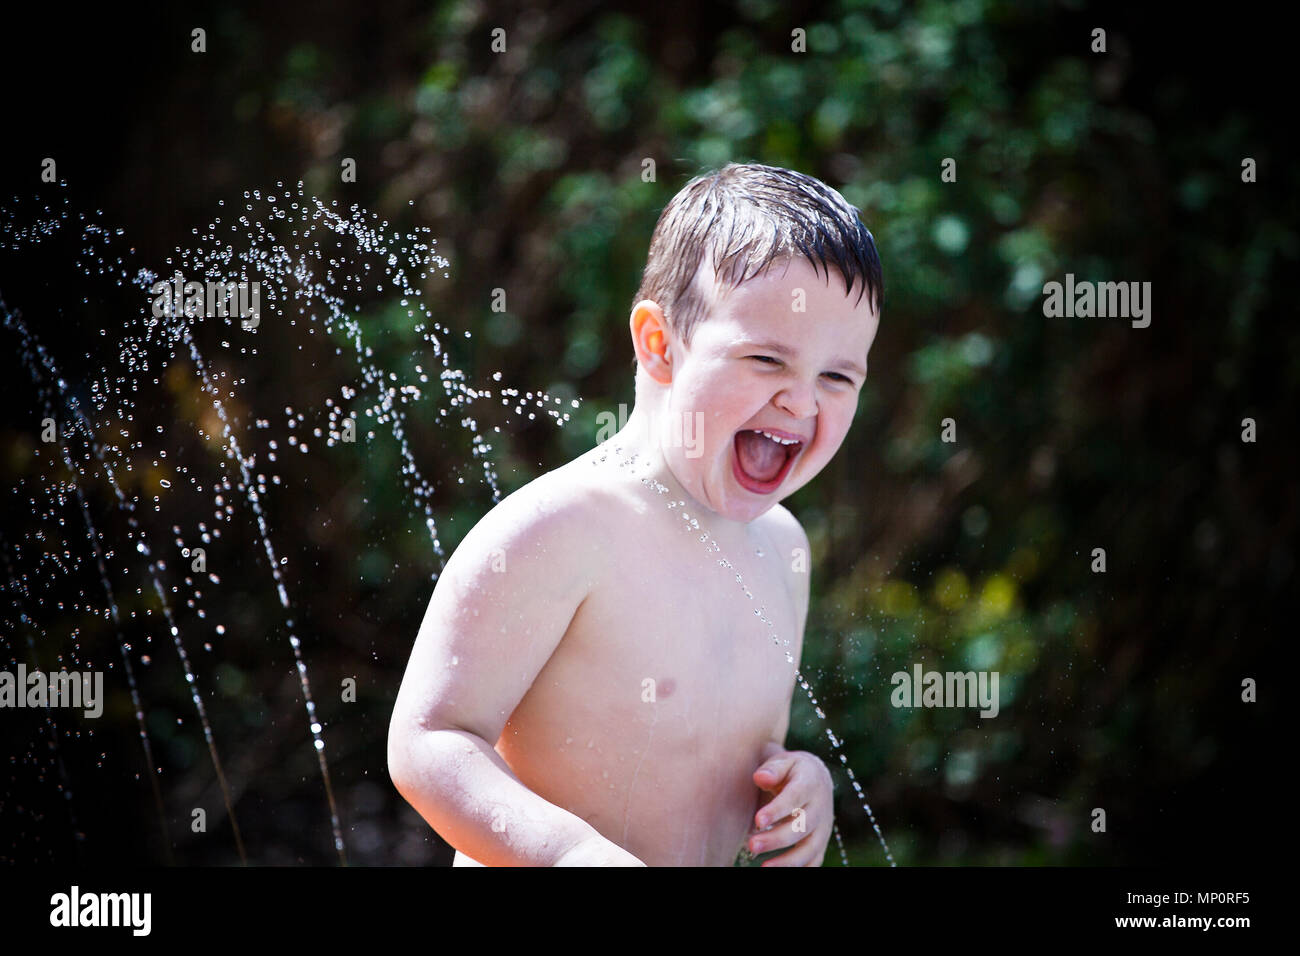 Joven jugando con rociadores de agua en el jardín de atrás Foto de stock